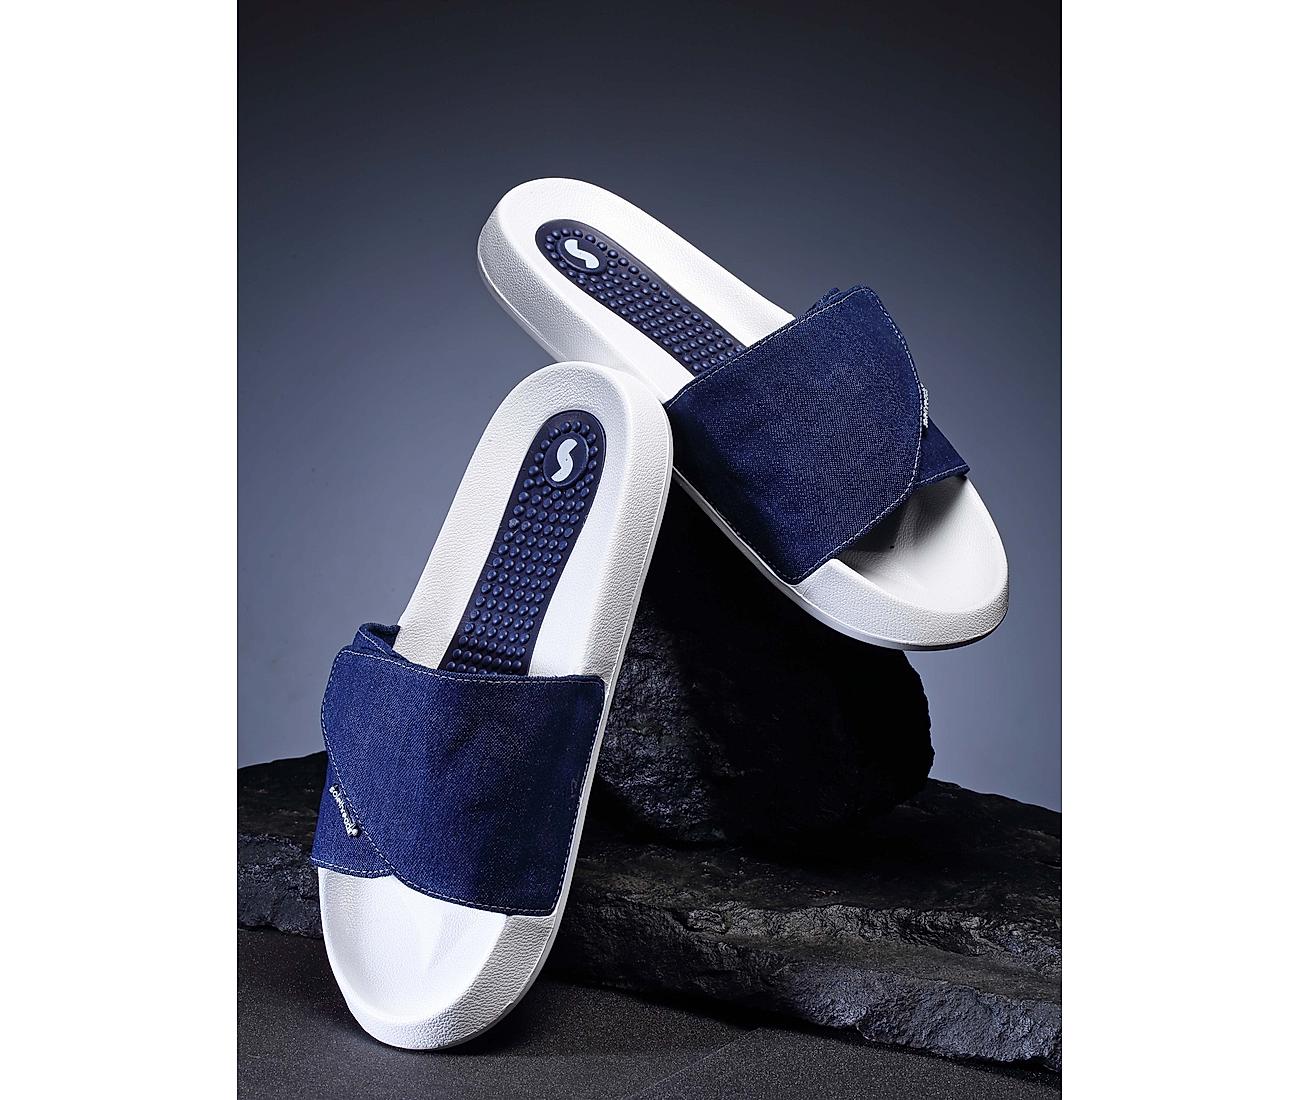 Nine West Shoes Womens 7 Denim Sandals Buckle Strap Block Heel Open Toe  Blue | eBay